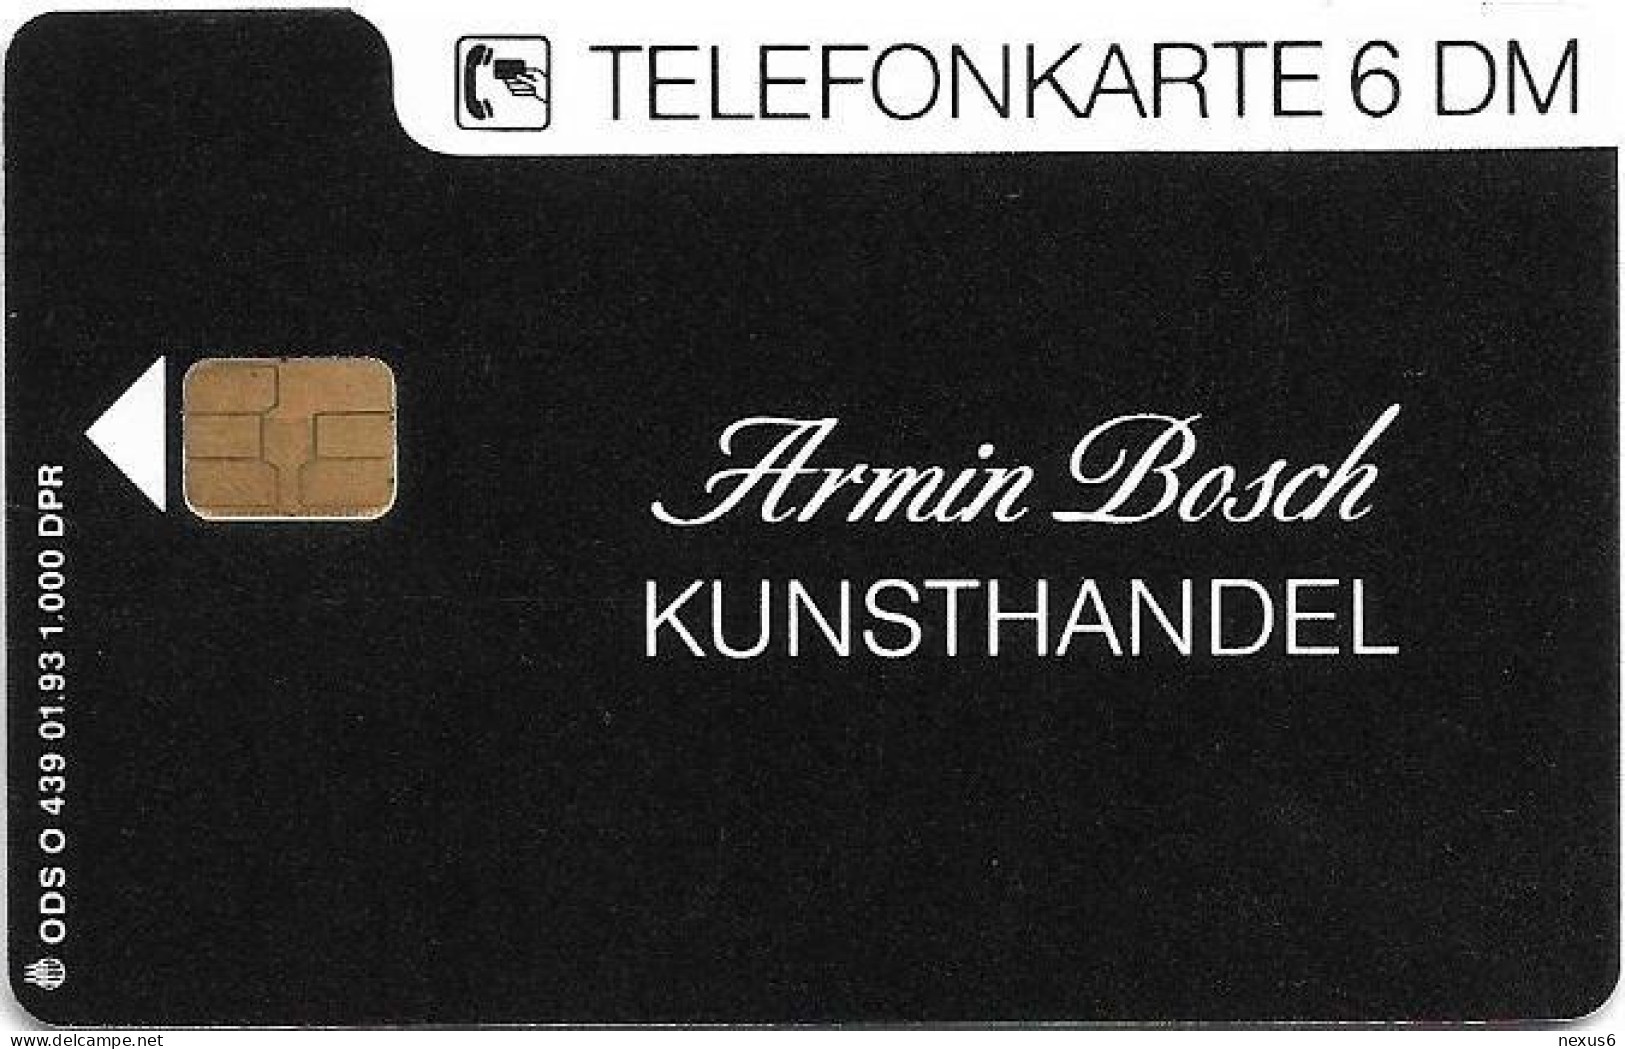 Germany - Kunsthandel Armin Bosch - O 0439 - 01.1993, 6DM, 1.000ex, Mint - O-Serie : Serie Clienti Esclusi Dal Servizio Delle Collezioni